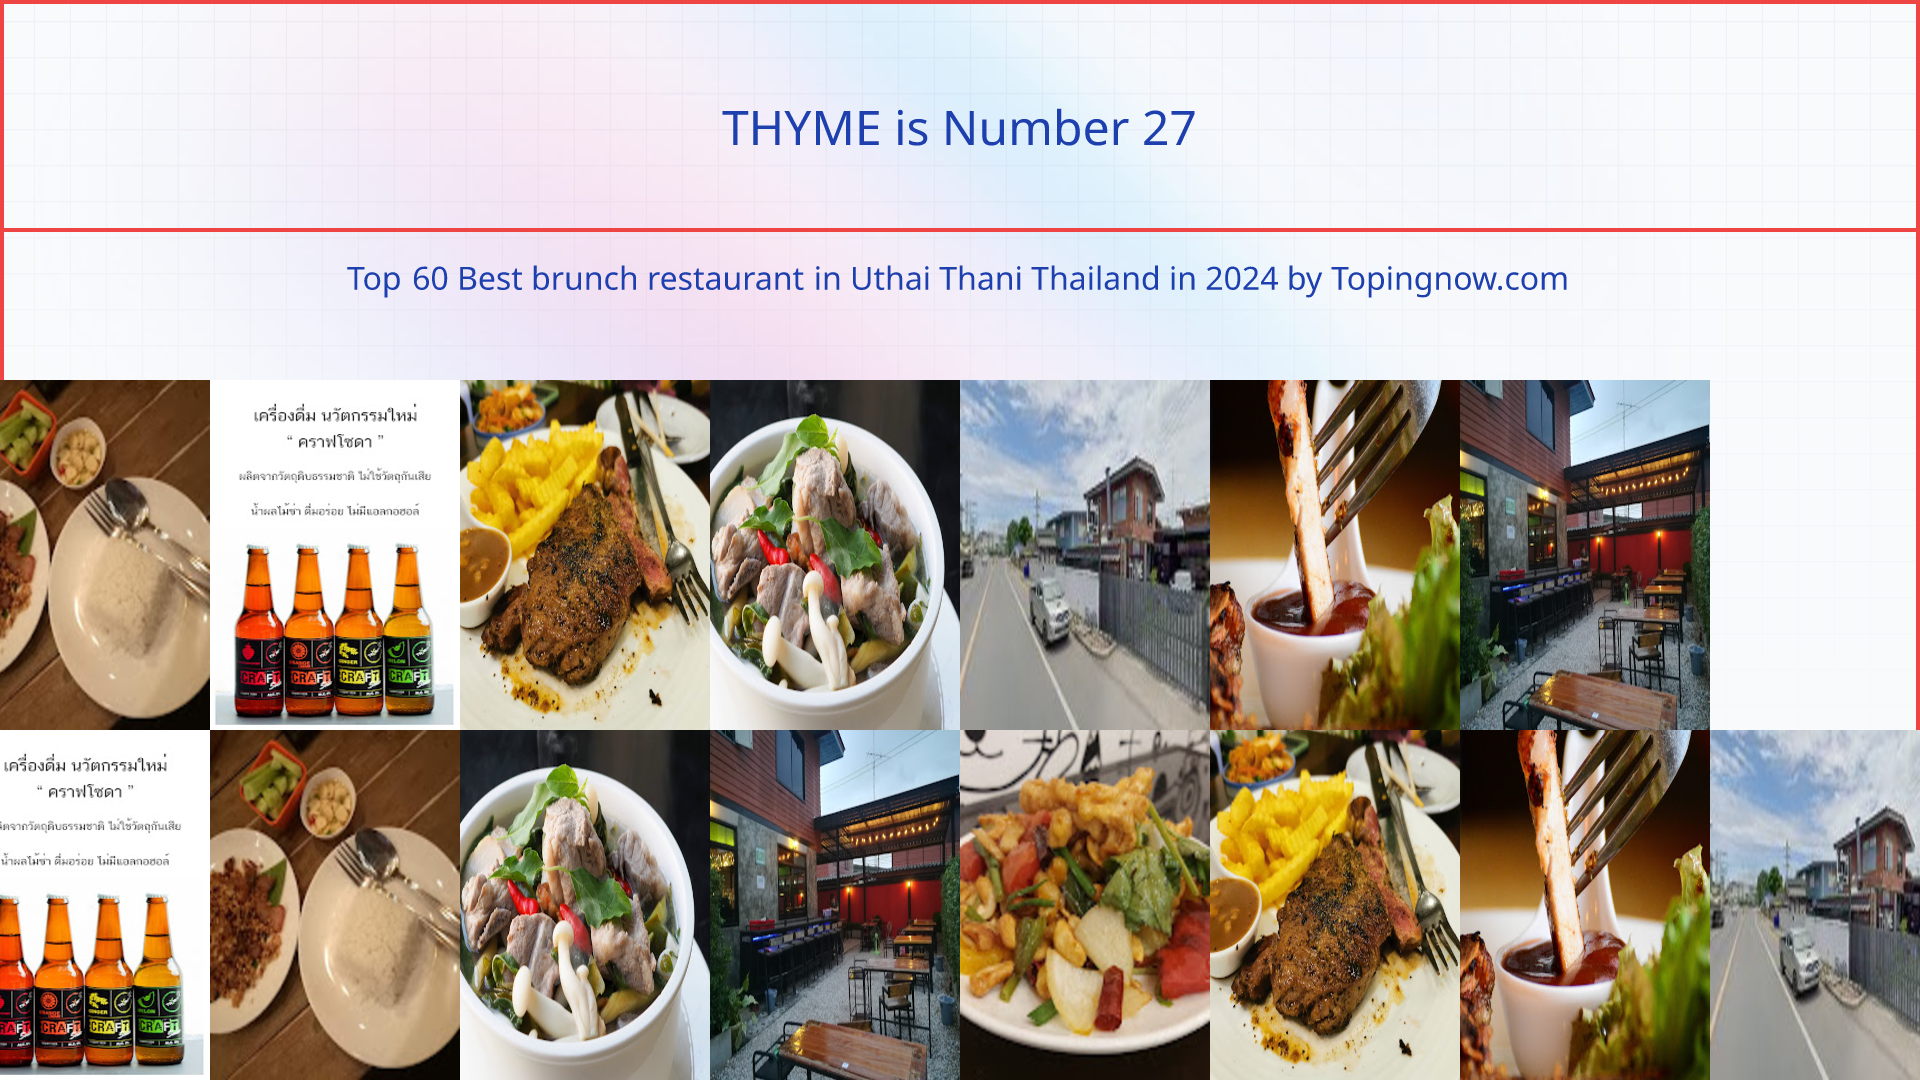 THYME: Top 60 Best brunch restaurant in Uthai Thani Thailand in 2024